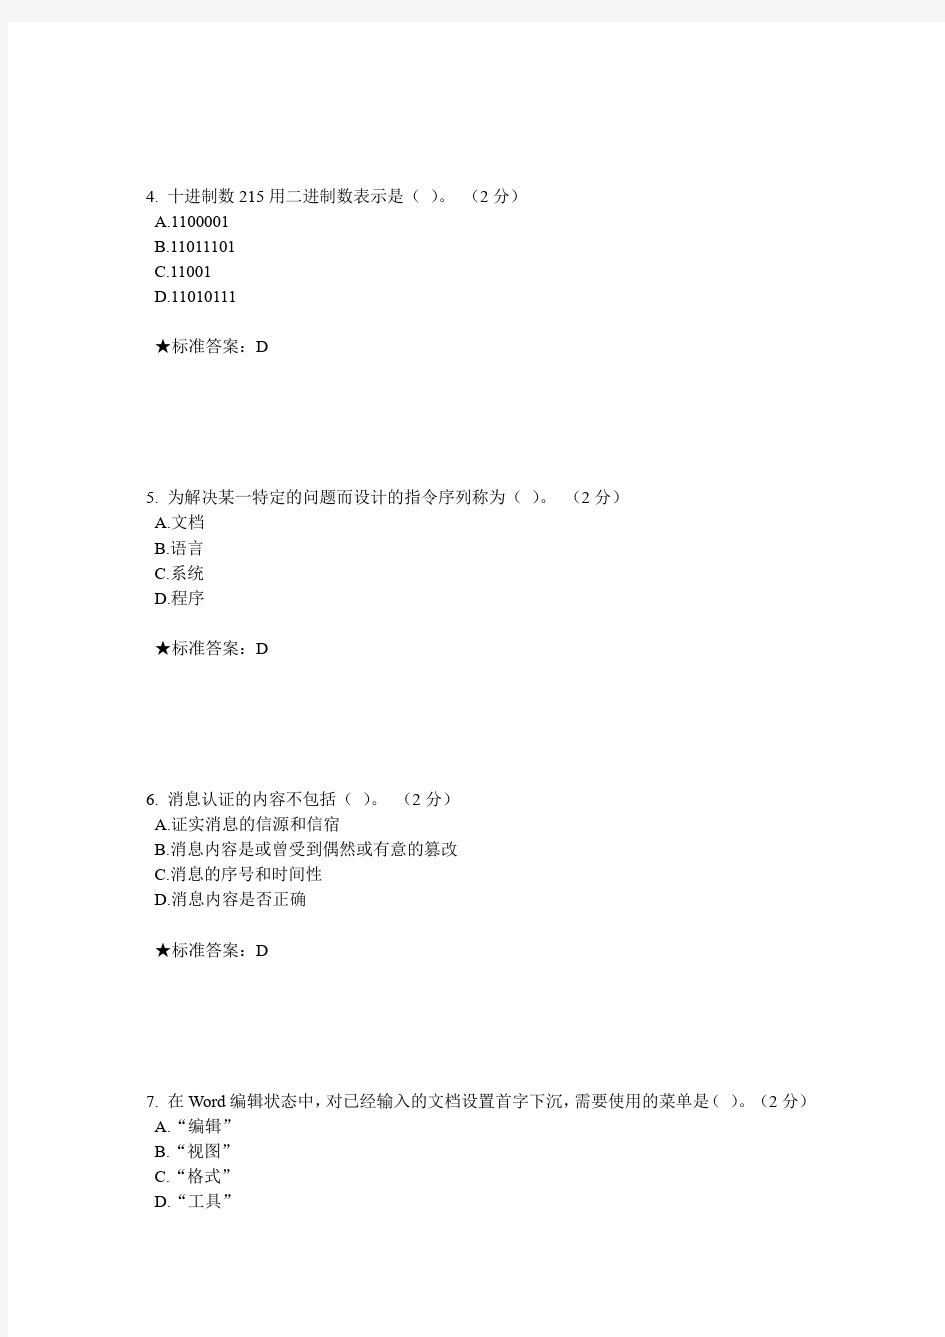 【2014春季版】中南大学《计算机基础》在线考试题库(三套)(有答案)